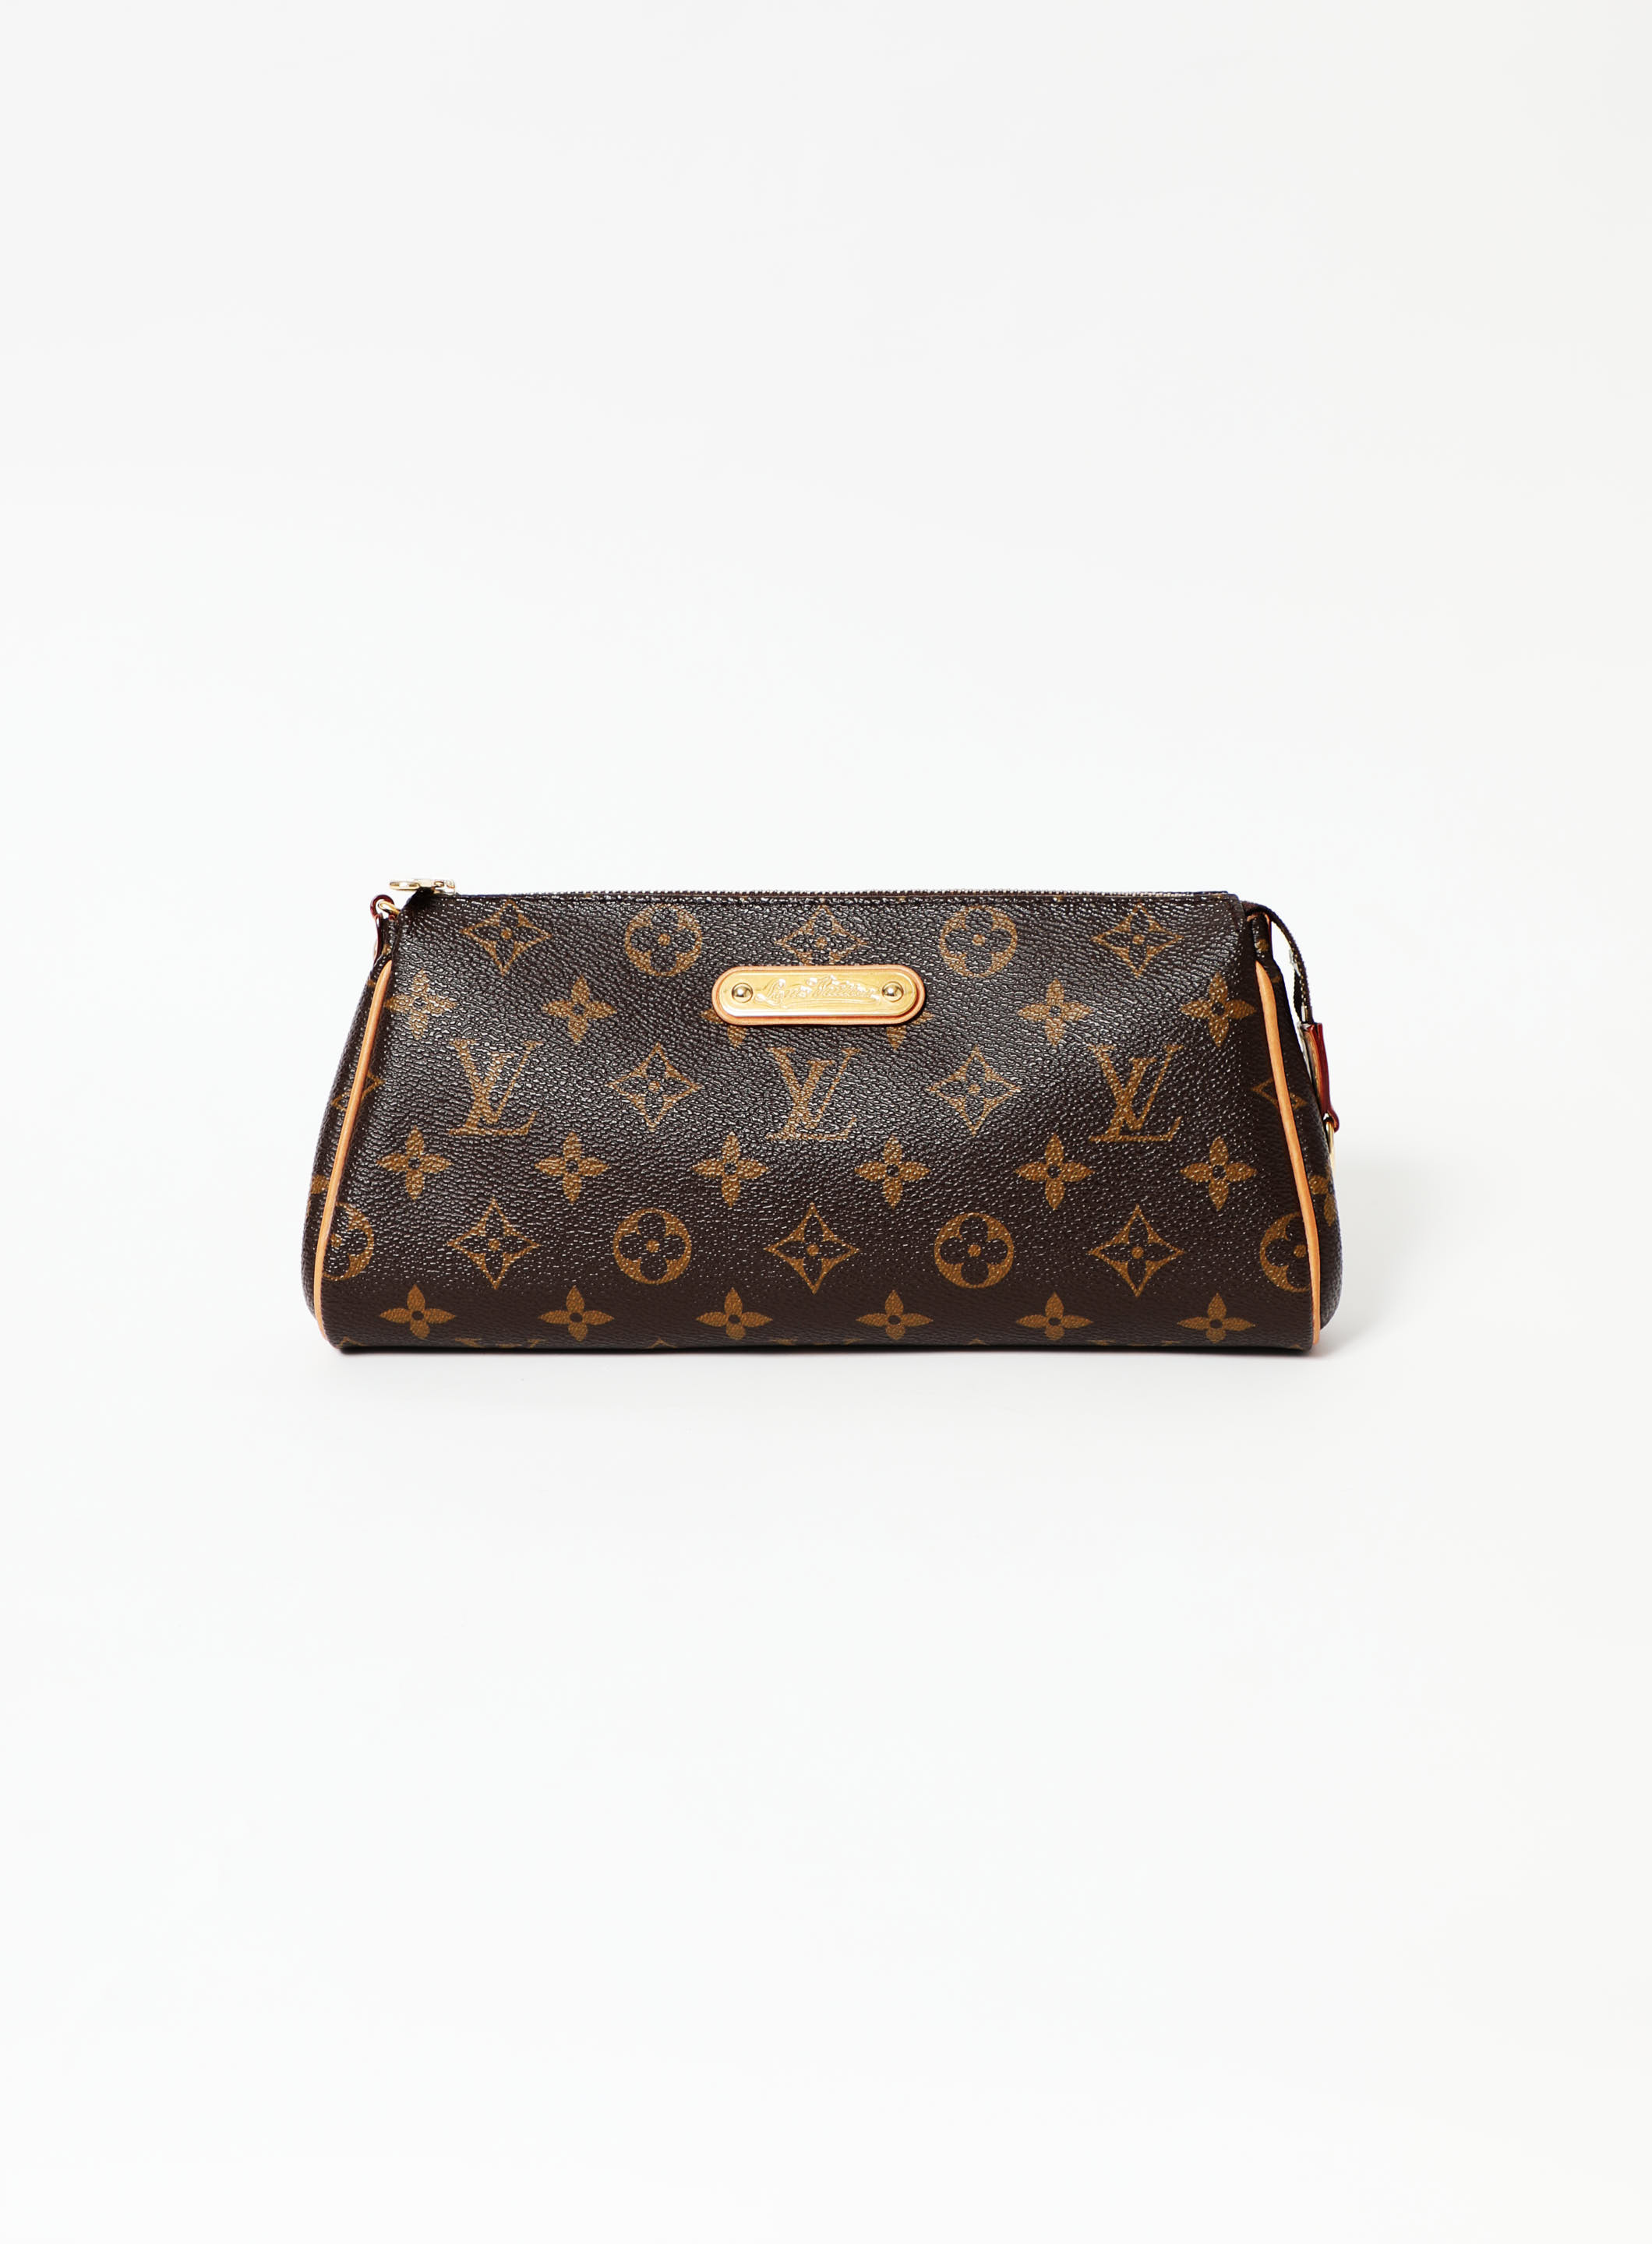 Louis Vuitton, Bags, Louis Vuitton Authentic Monogram Eva Clutch  Excellent Condition